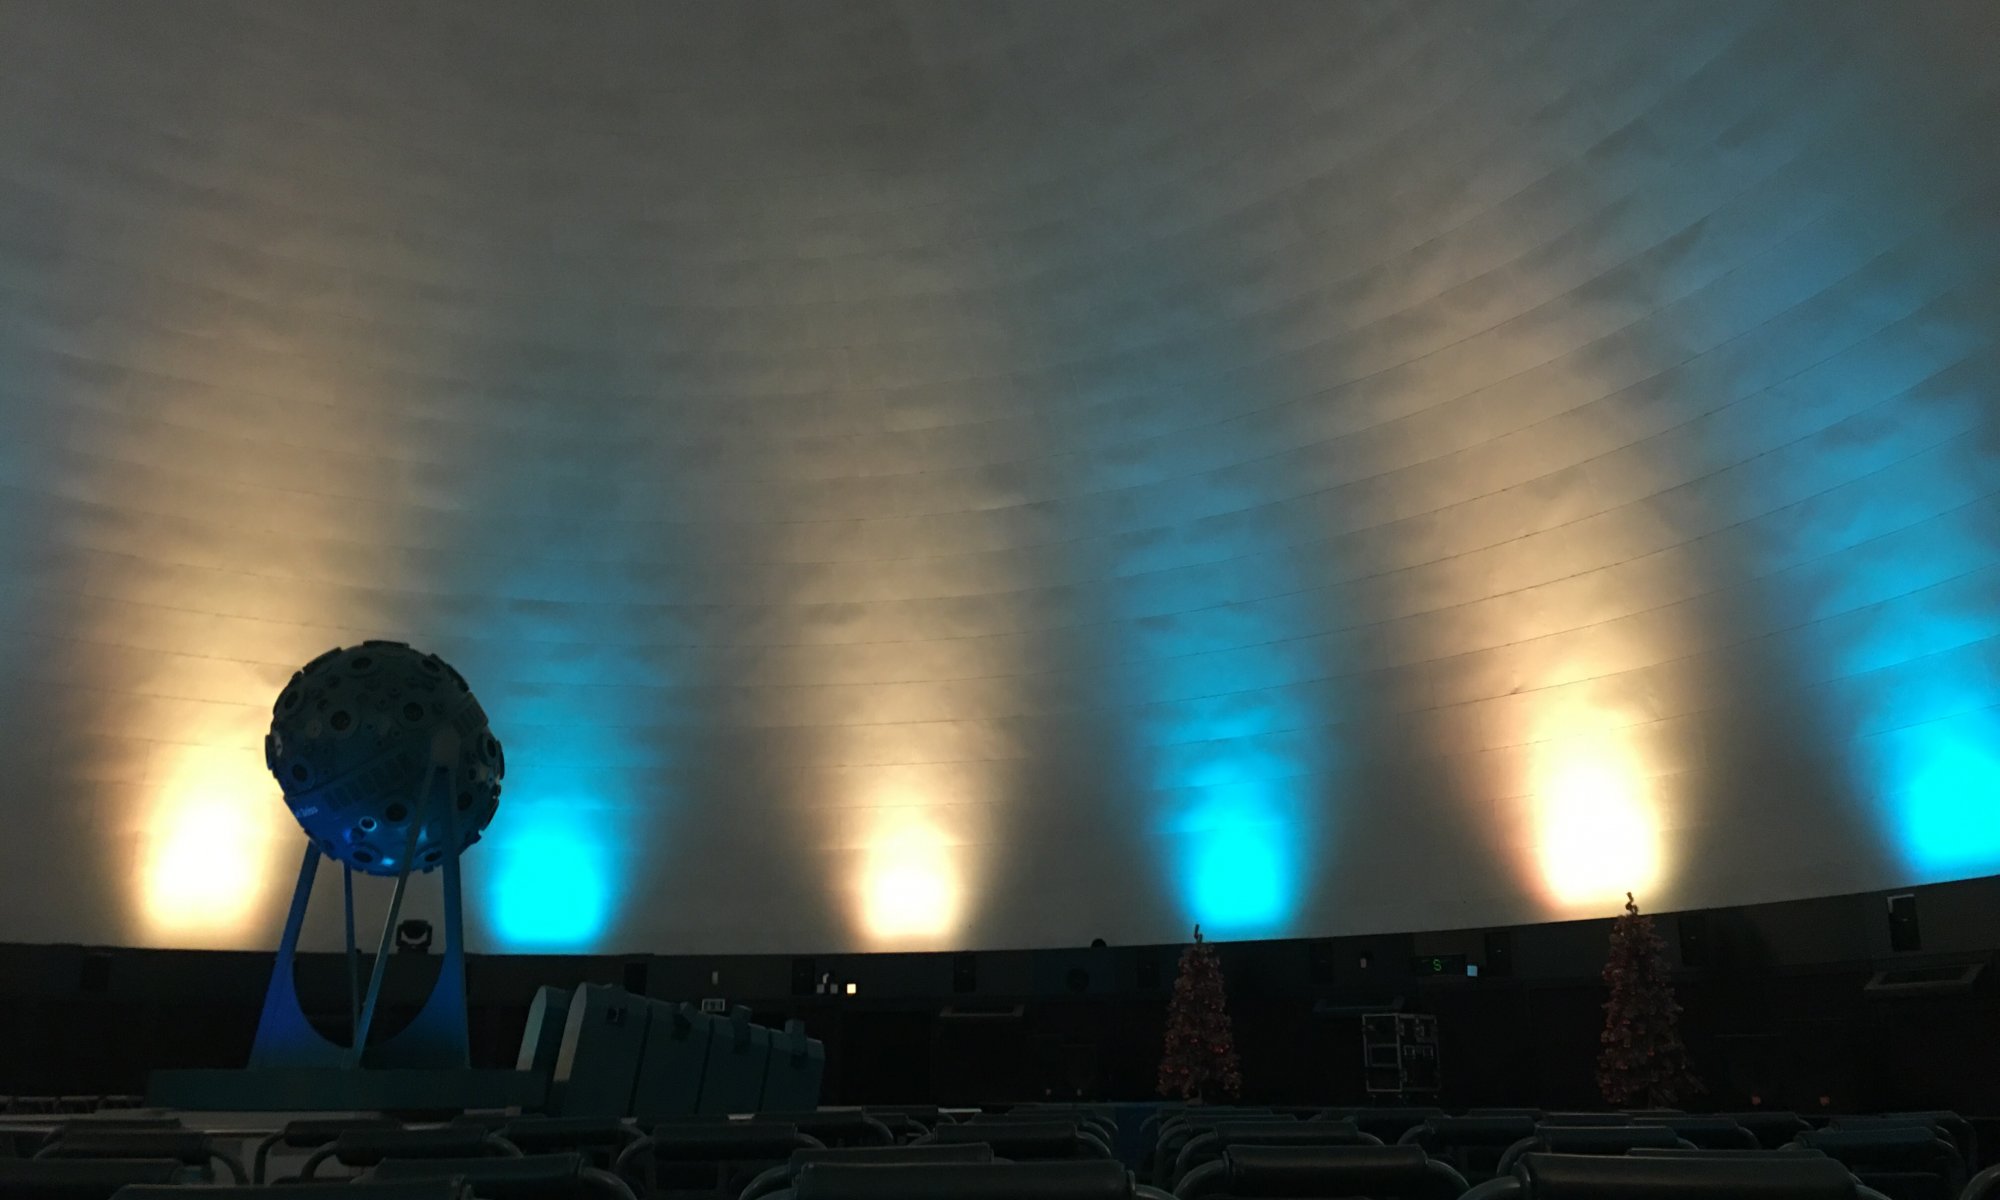 Carl-Zeiss-Planetarium, Jena, Germany